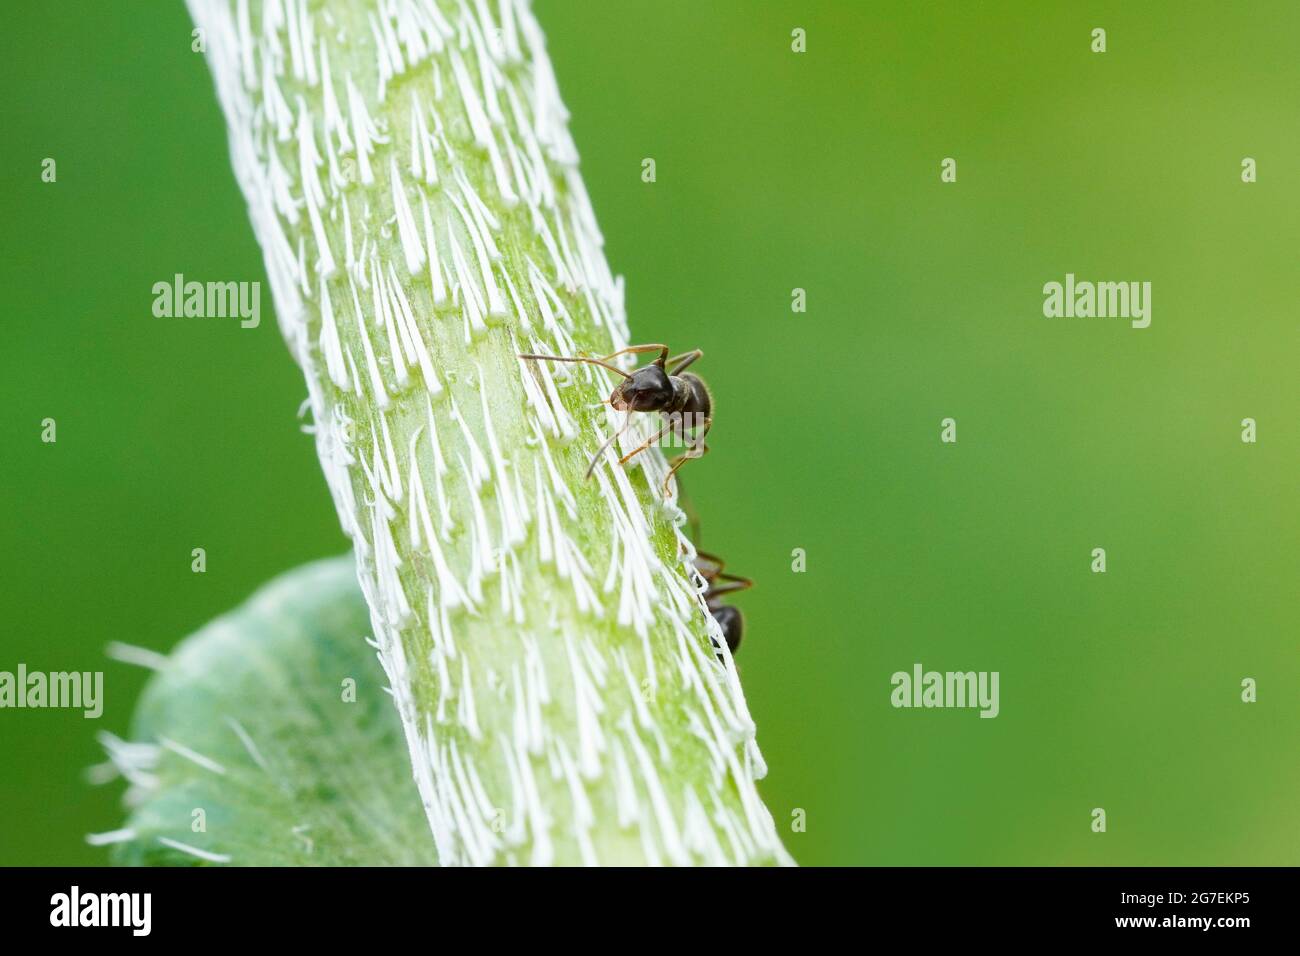 Ameise auf einer Mohnpflanze und grünem Hintergrund. Insekt in einer detailreichen Nahaufnahme. Formicidae Stockfoto